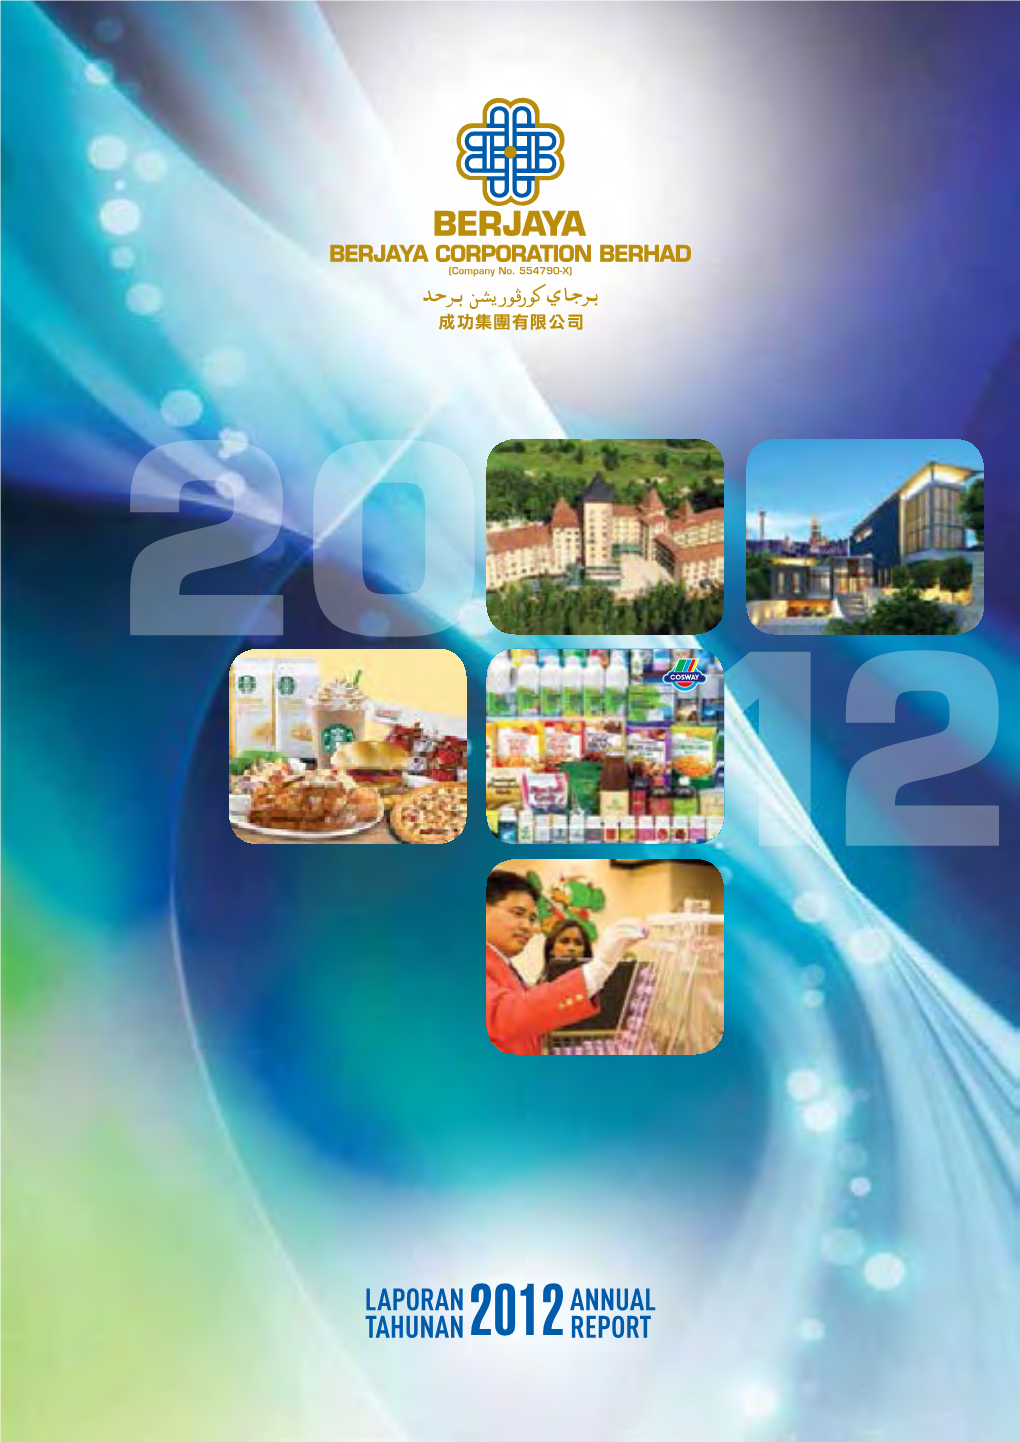 Laporan Tahunan Annual Report